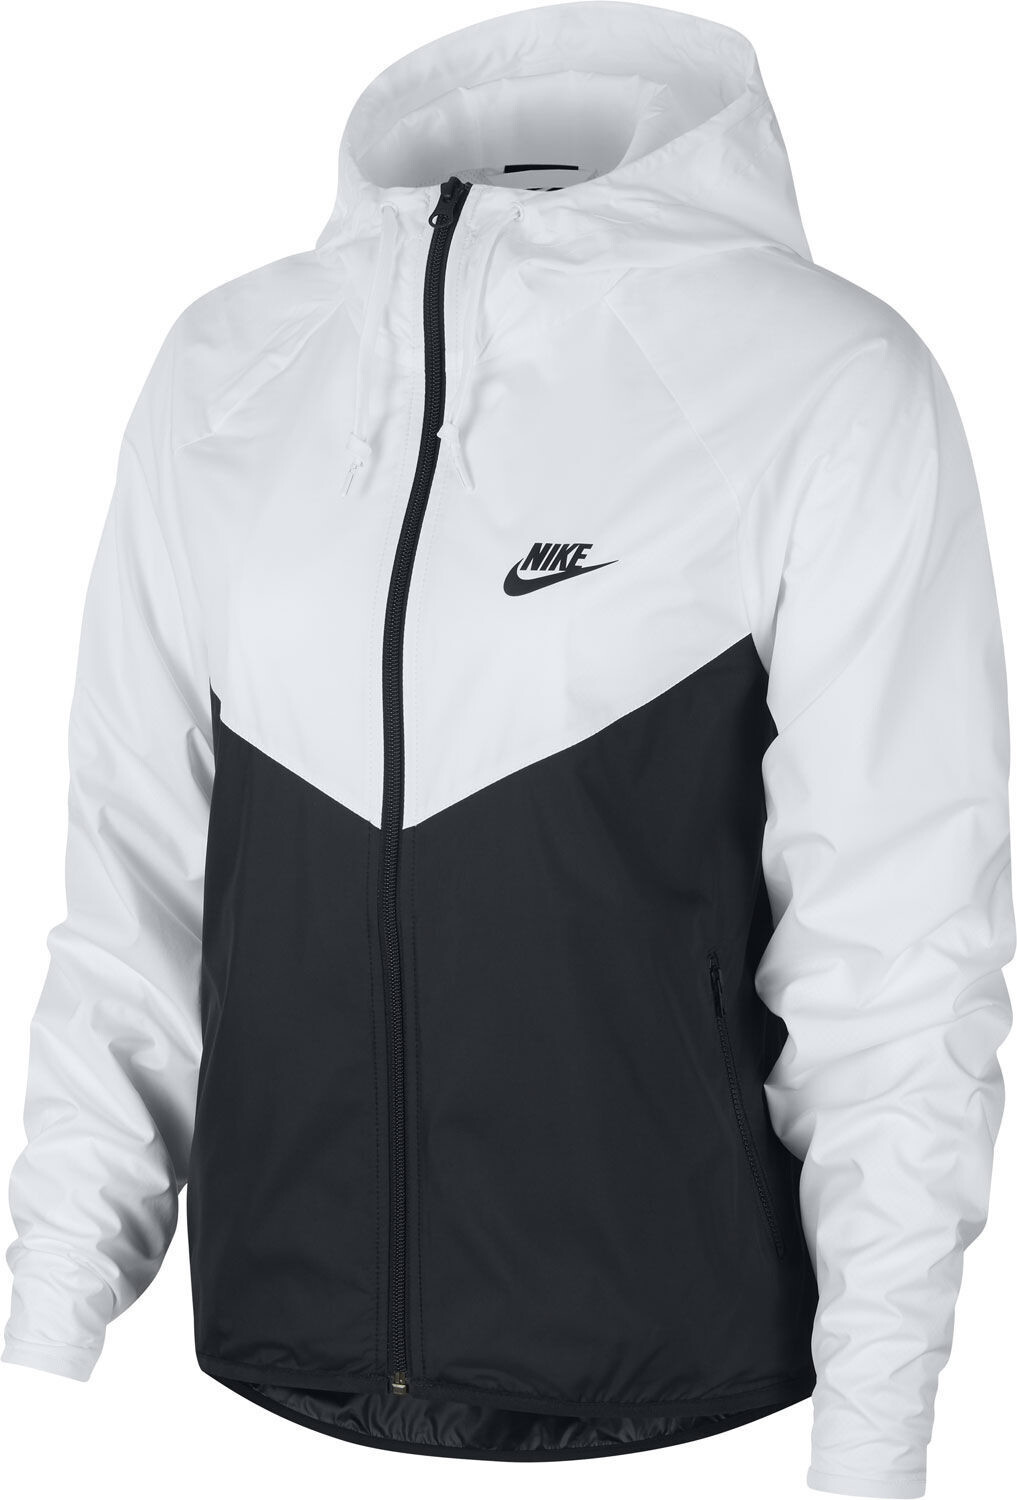 Nike Women's Jacket Windrunner (BV3939)